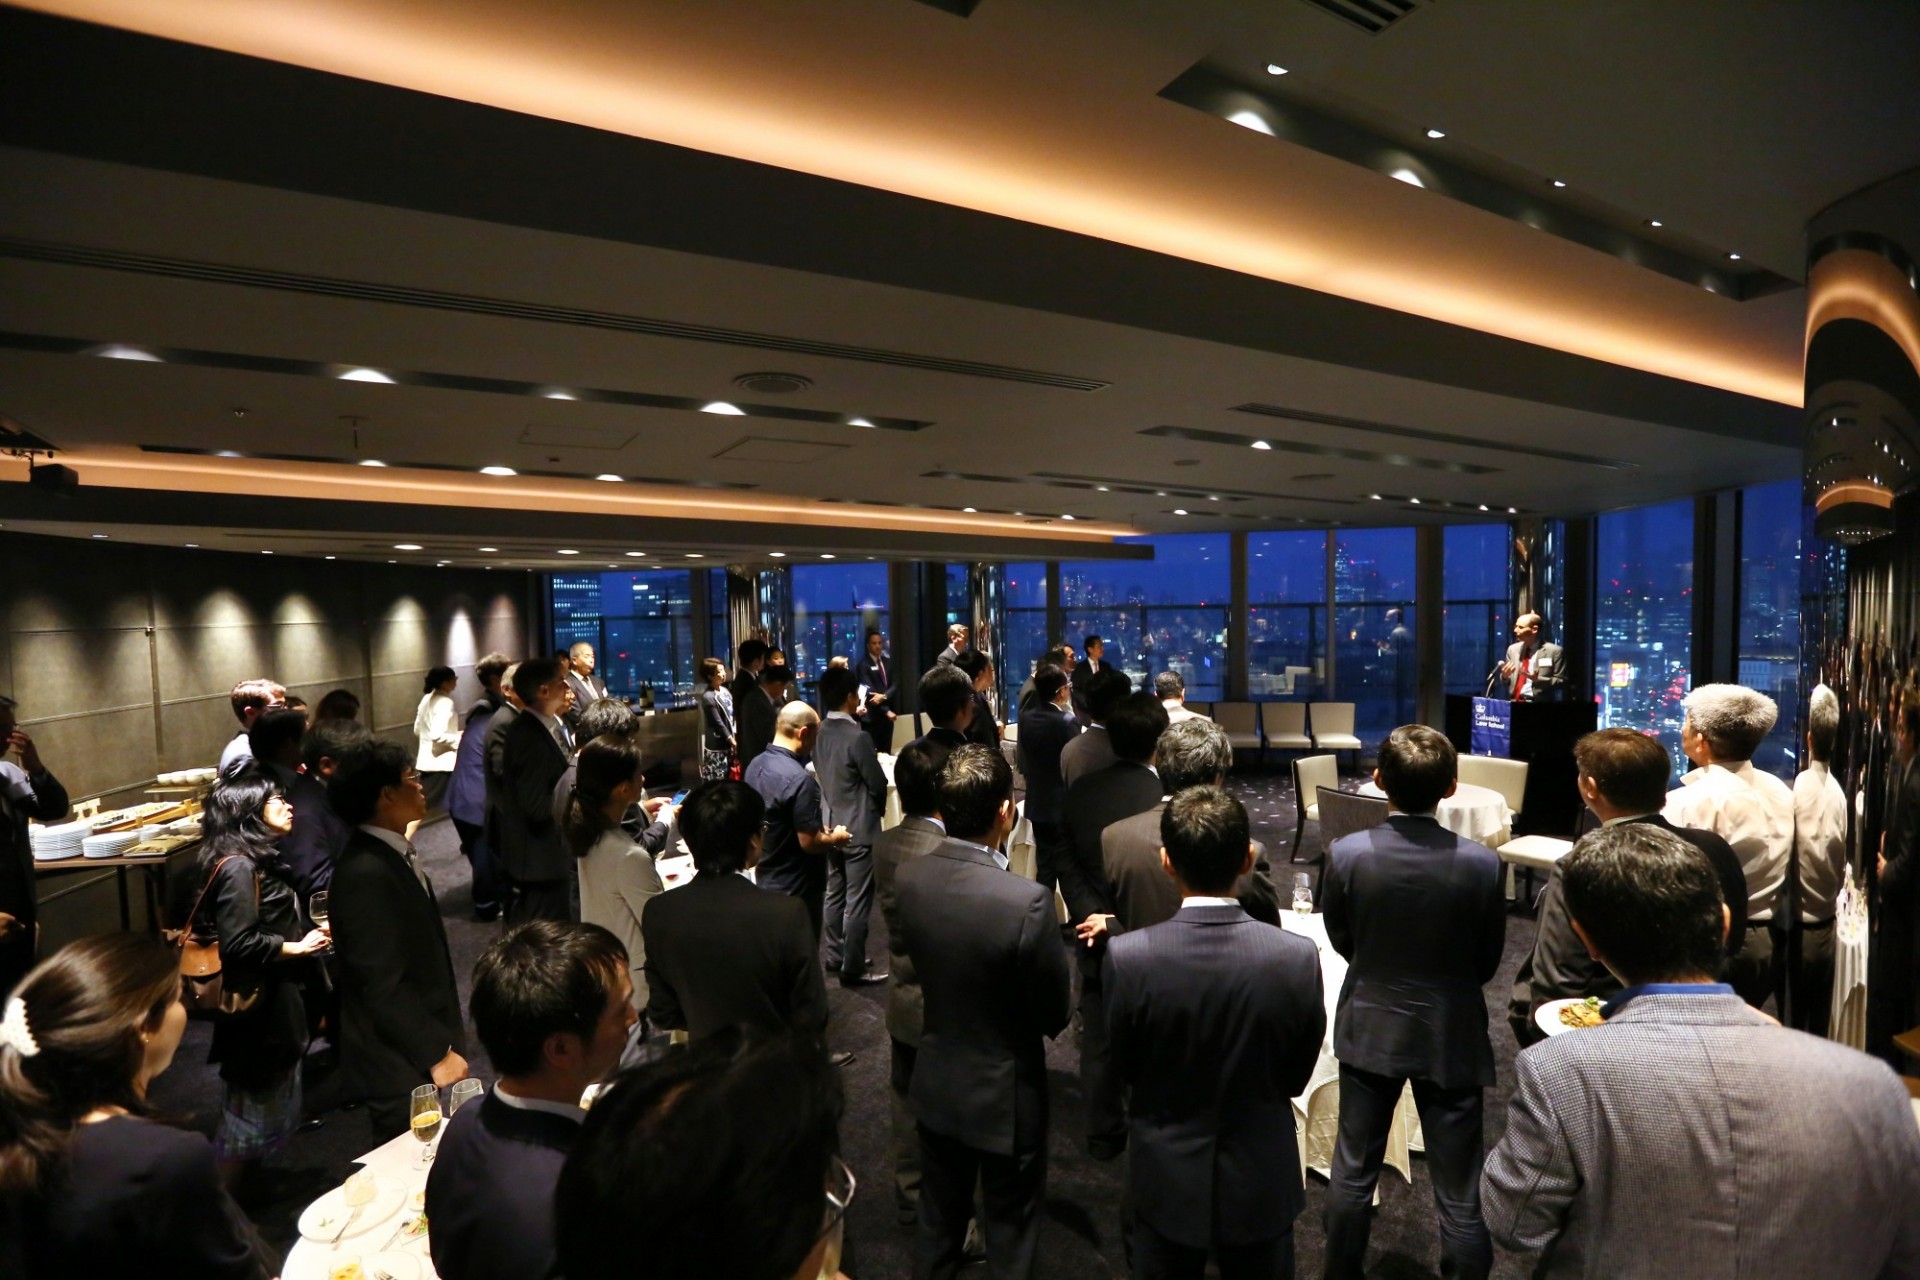 Tokyo Alumni Reception